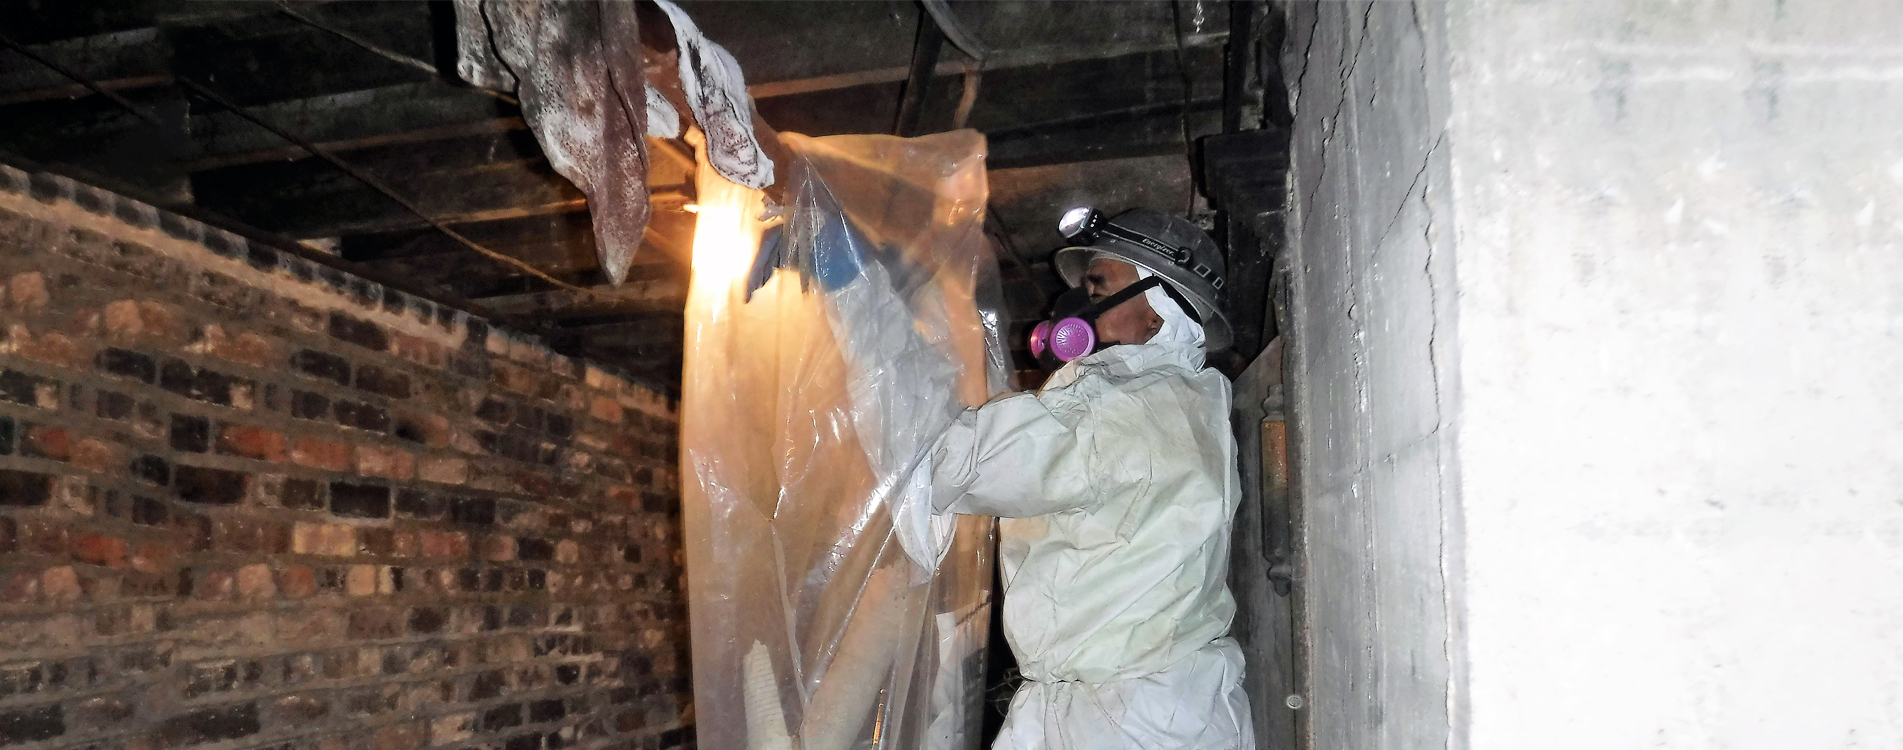 Asbestos Removal In Concord Nc Asbestos Testing Company